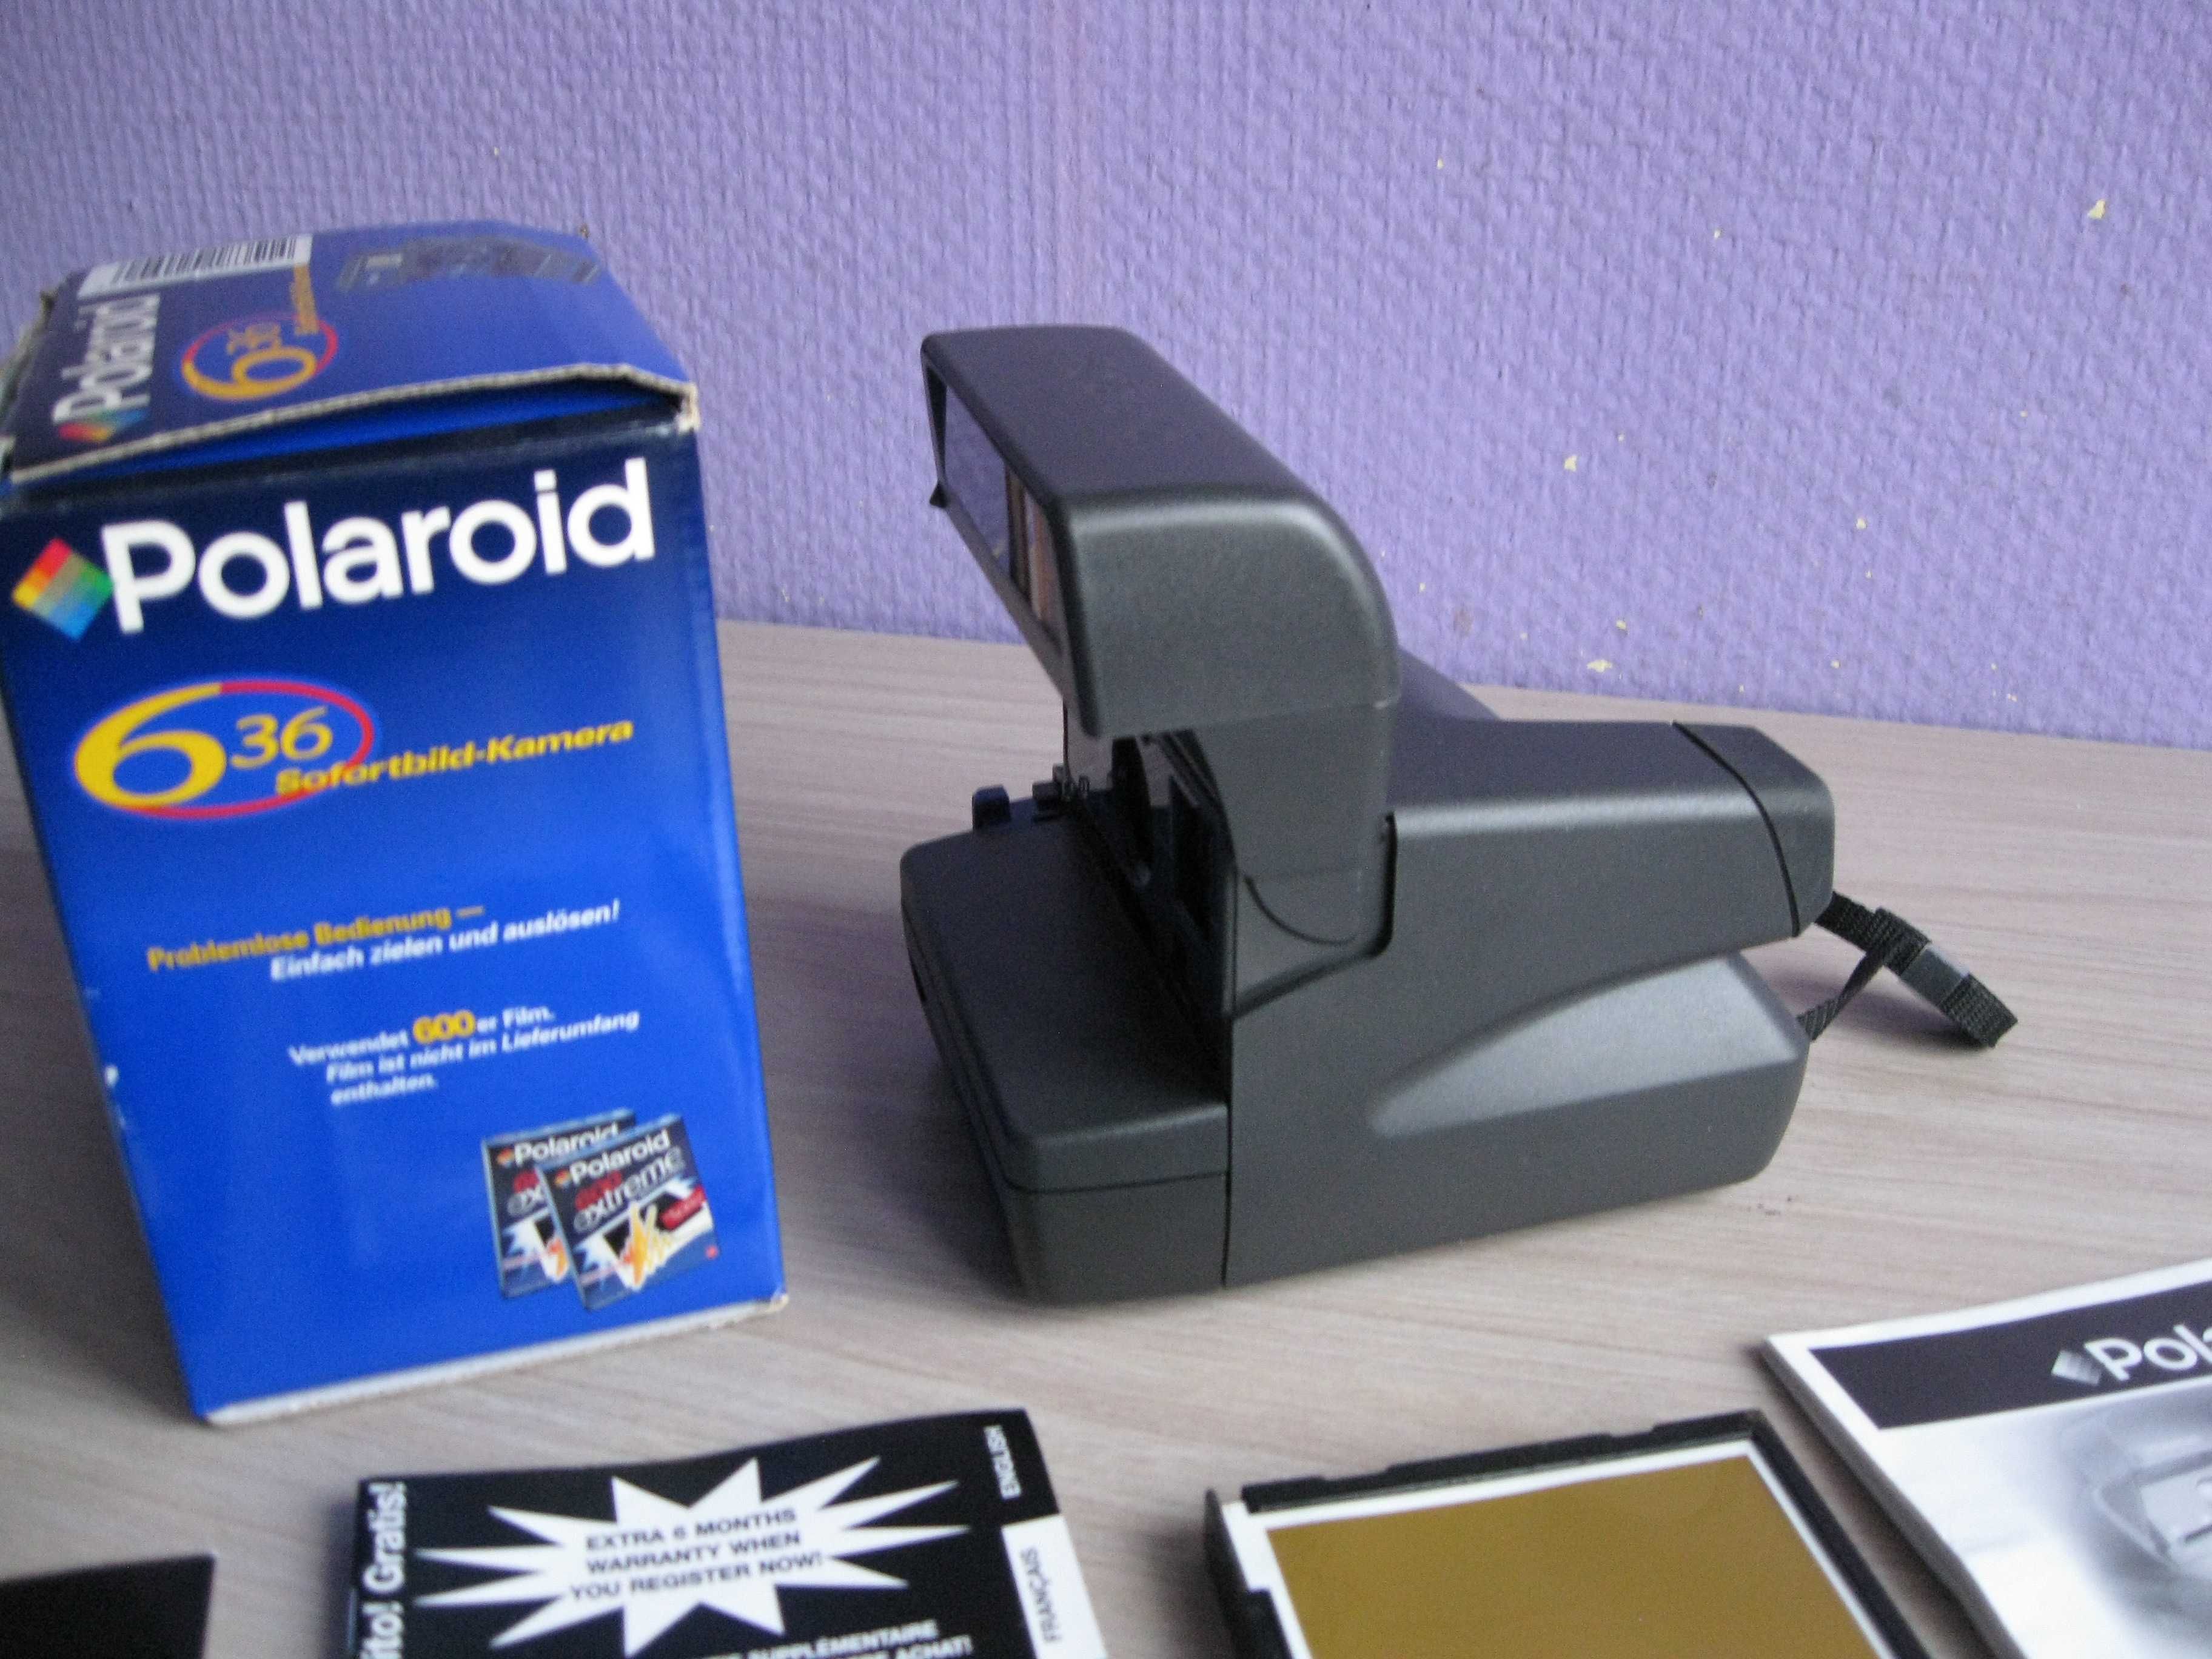 Polaroid 636 - aparat natychmiastowy nie używany